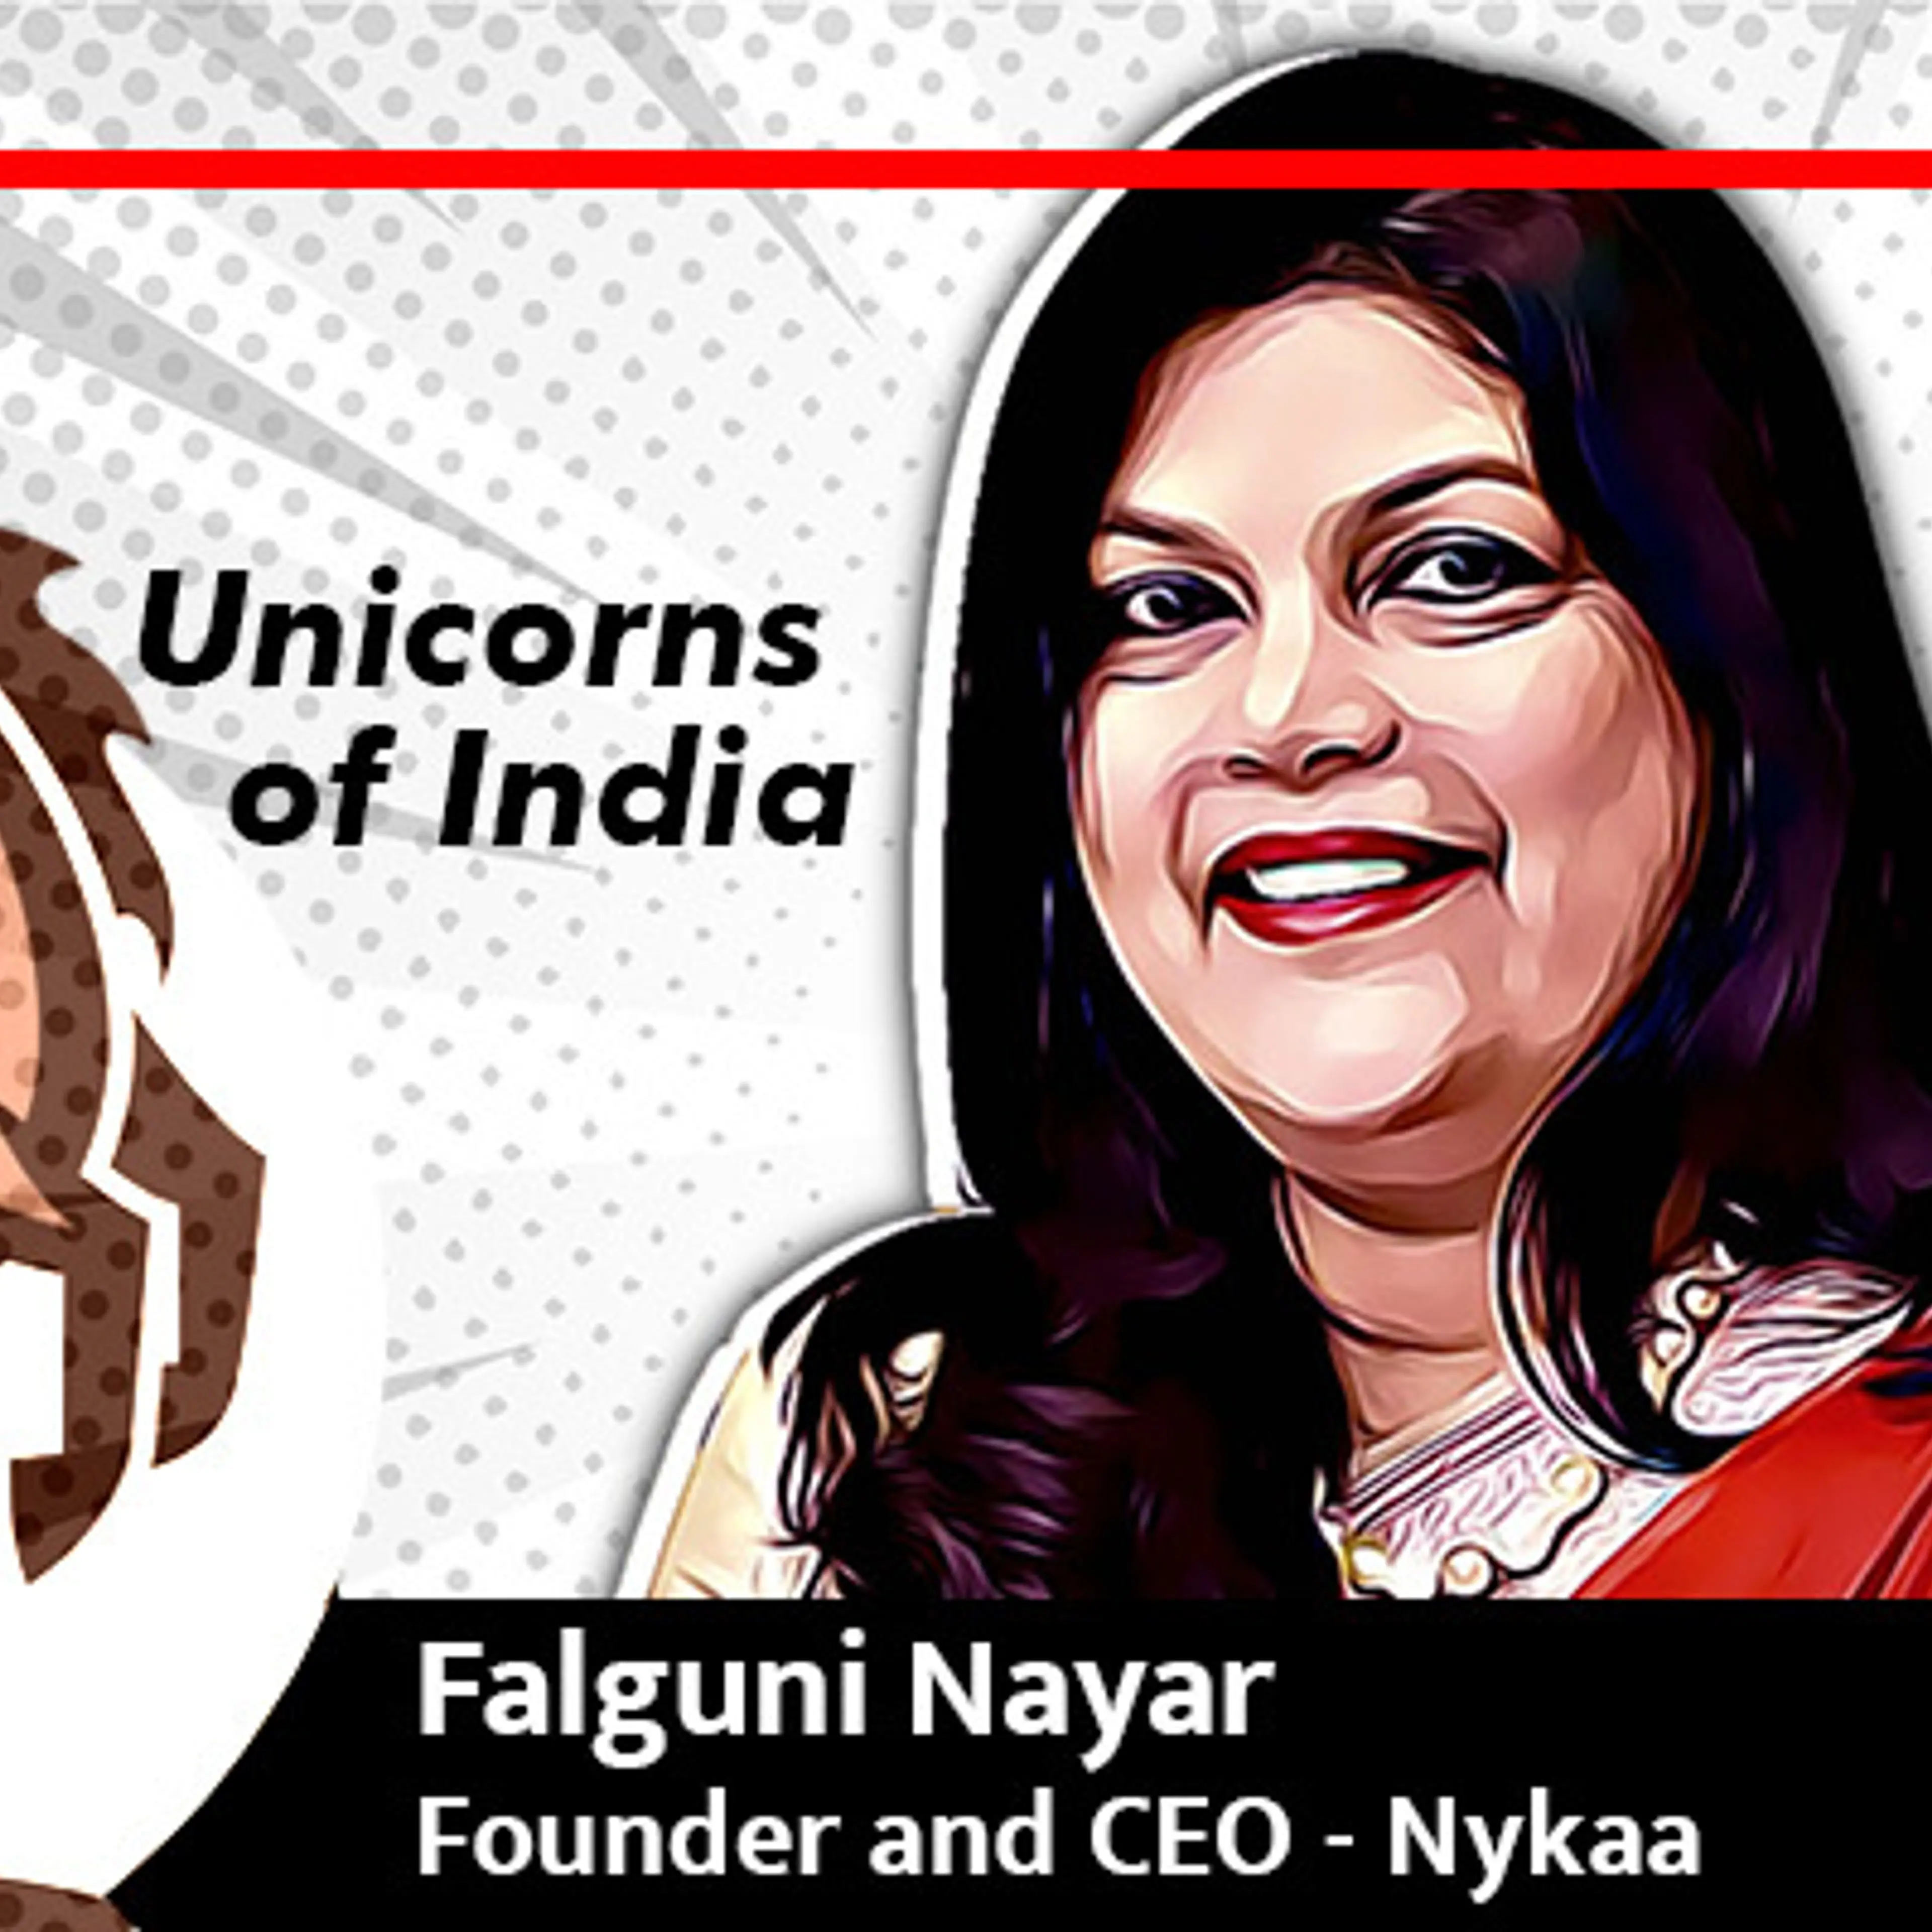 100 करोड़ डॉलर की कंपनी बनाने वाली पहली भारतीय महिला हैं Falguni Nayar, ऐसे हुई थी Nykaa की शुरुआत